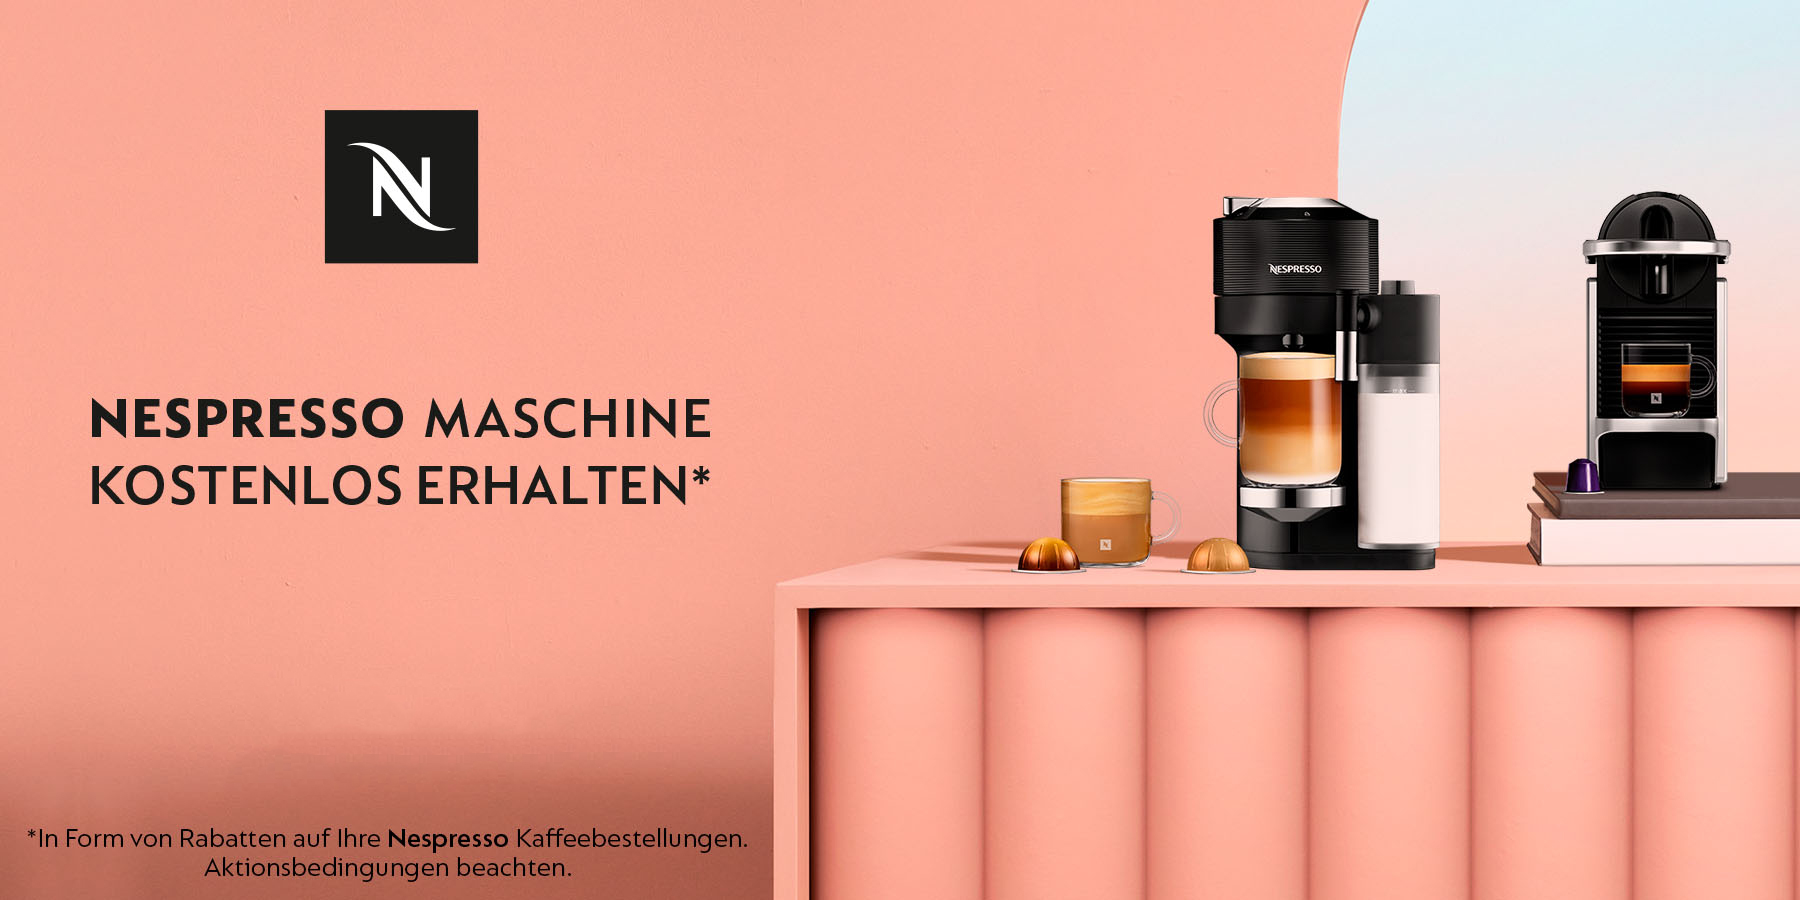 Nespresso Maschine kostenlos erhalten*